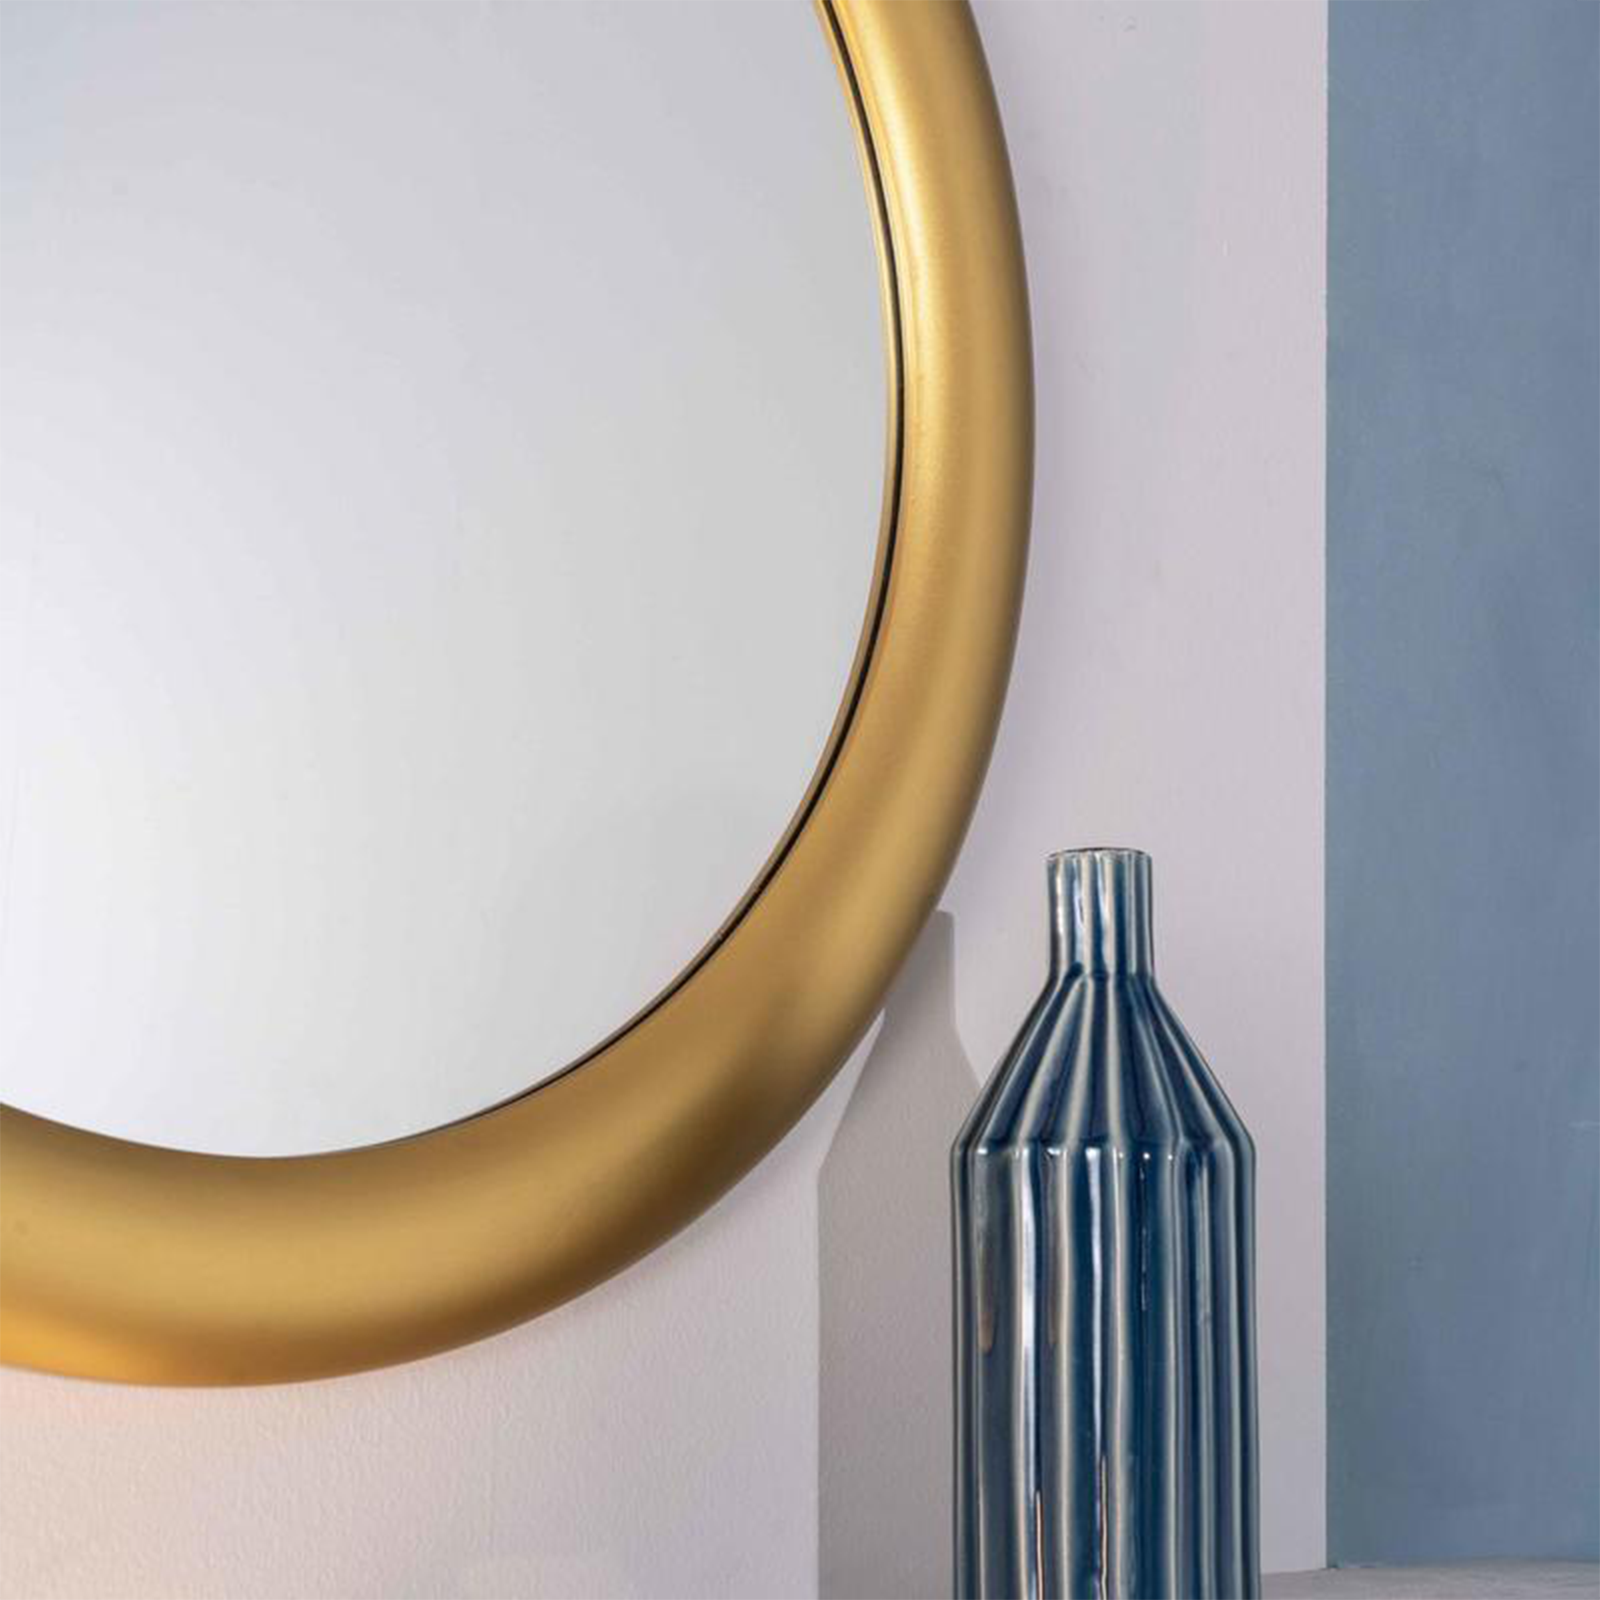 Specchio da parete "Icaro" cornice in legno dorata ovale cm 80x6 80h